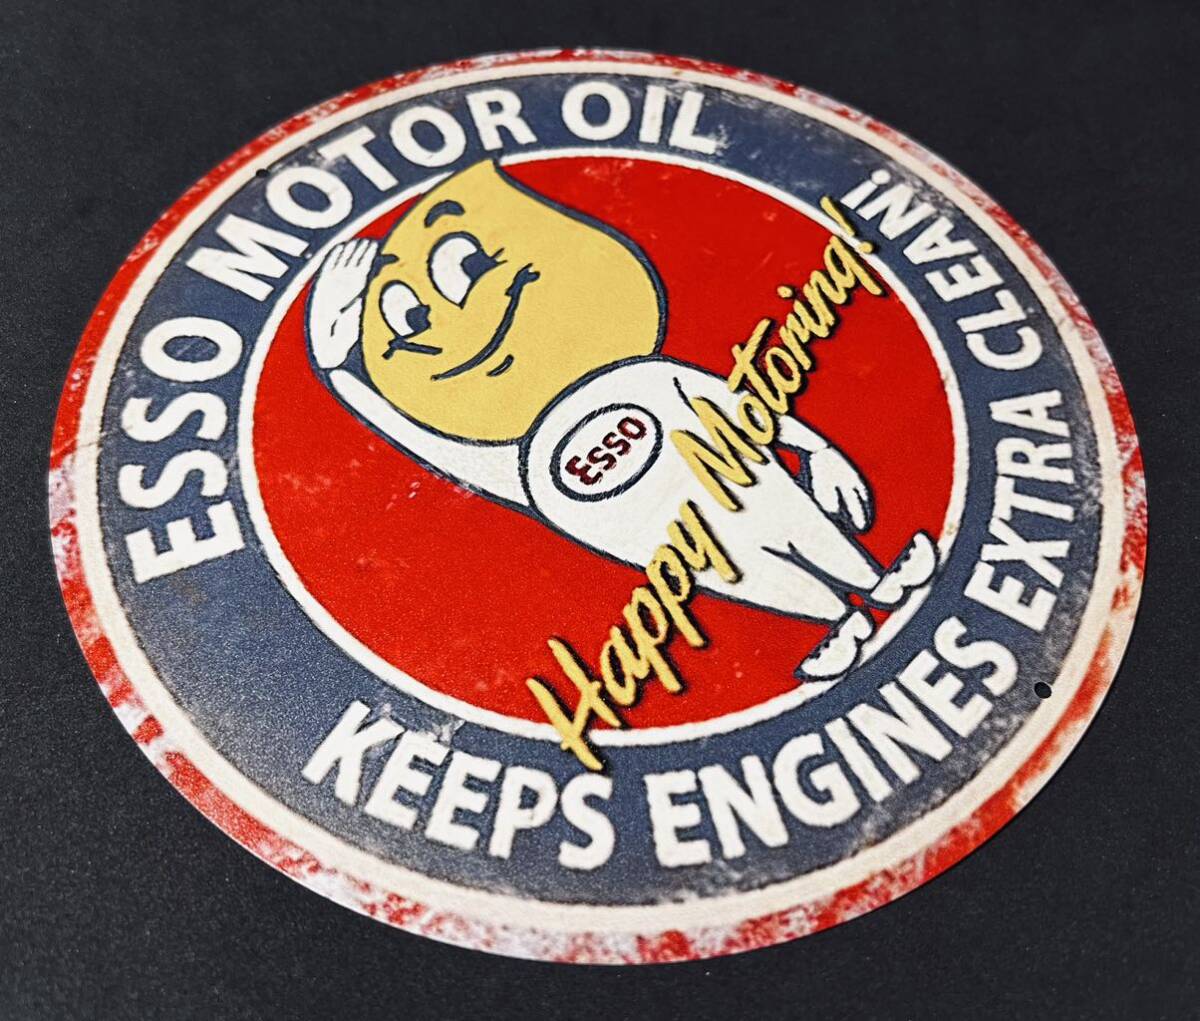 * ESSO MOTOR OIL Happy Motoringeso motor oil happy motoring Circle signboard eso Boy retro style *